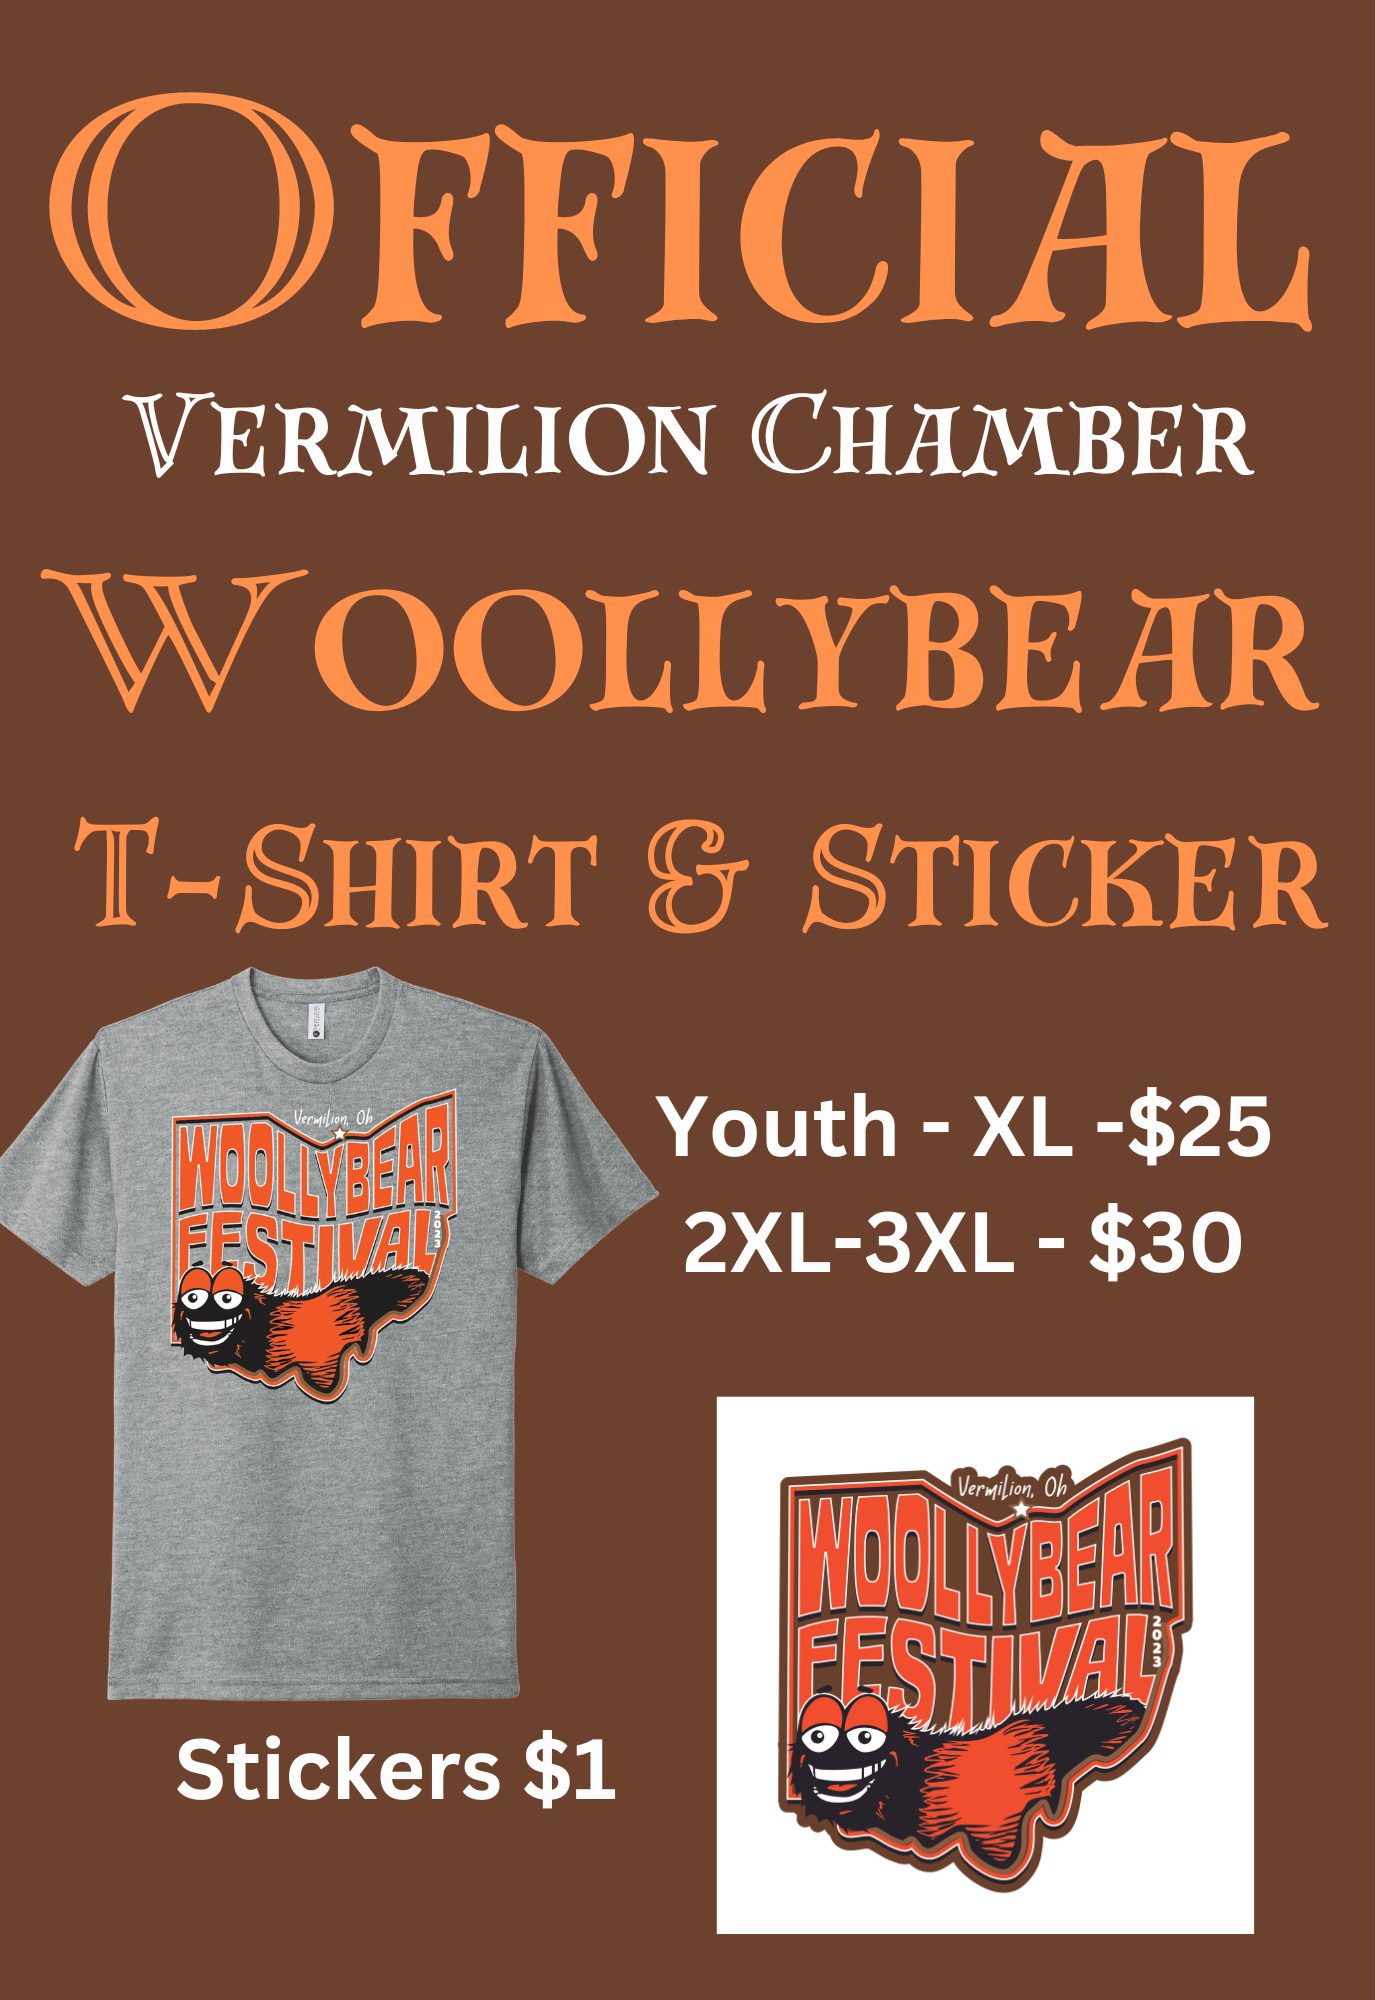 Official Vermilion Chamber Woollybear T-Shirt